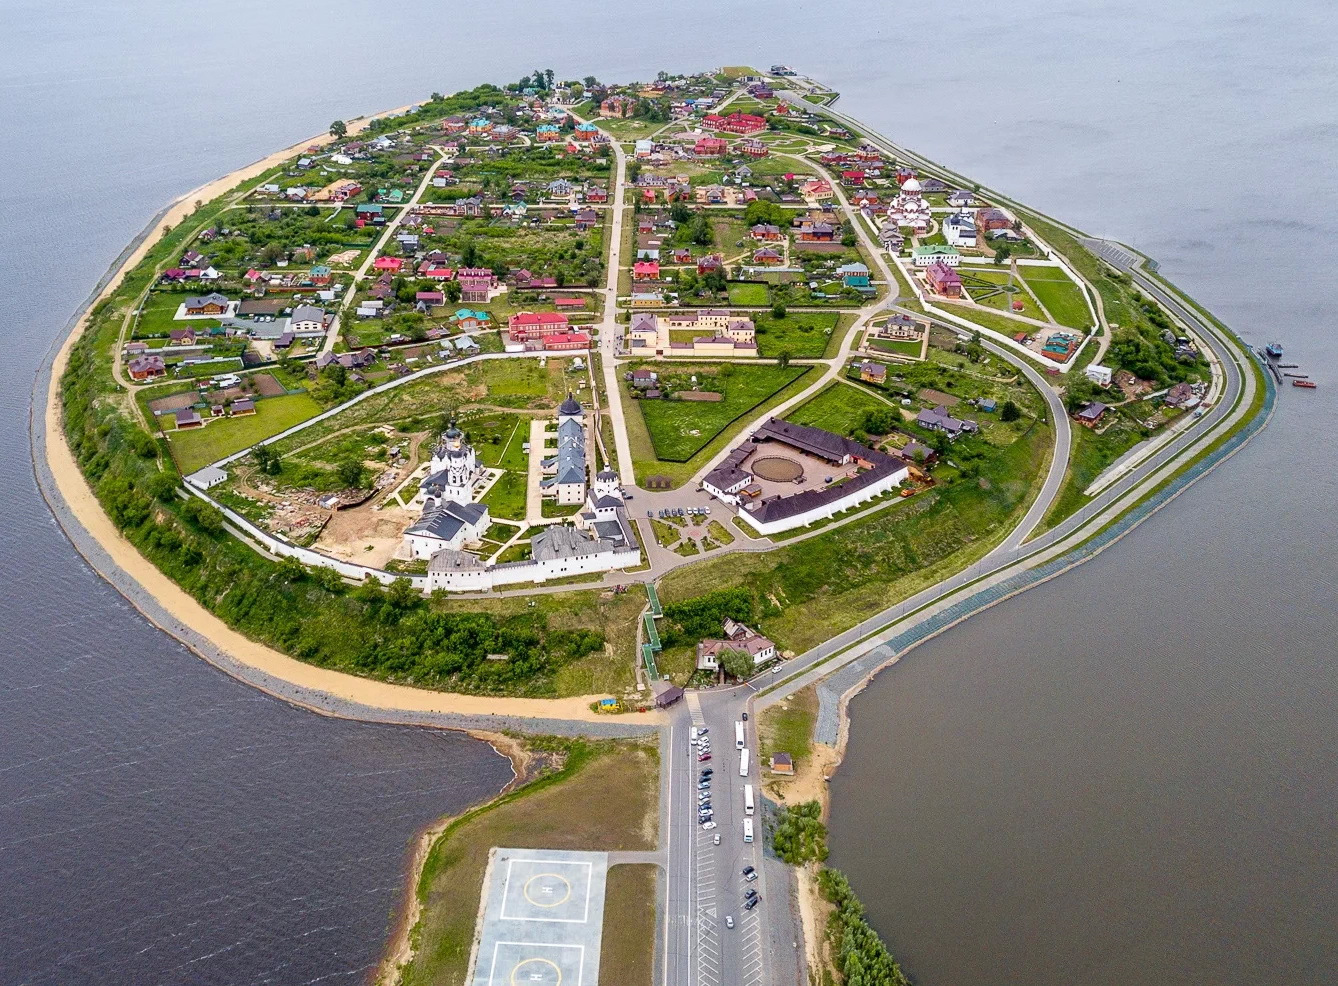 Остров град Свияжск монета